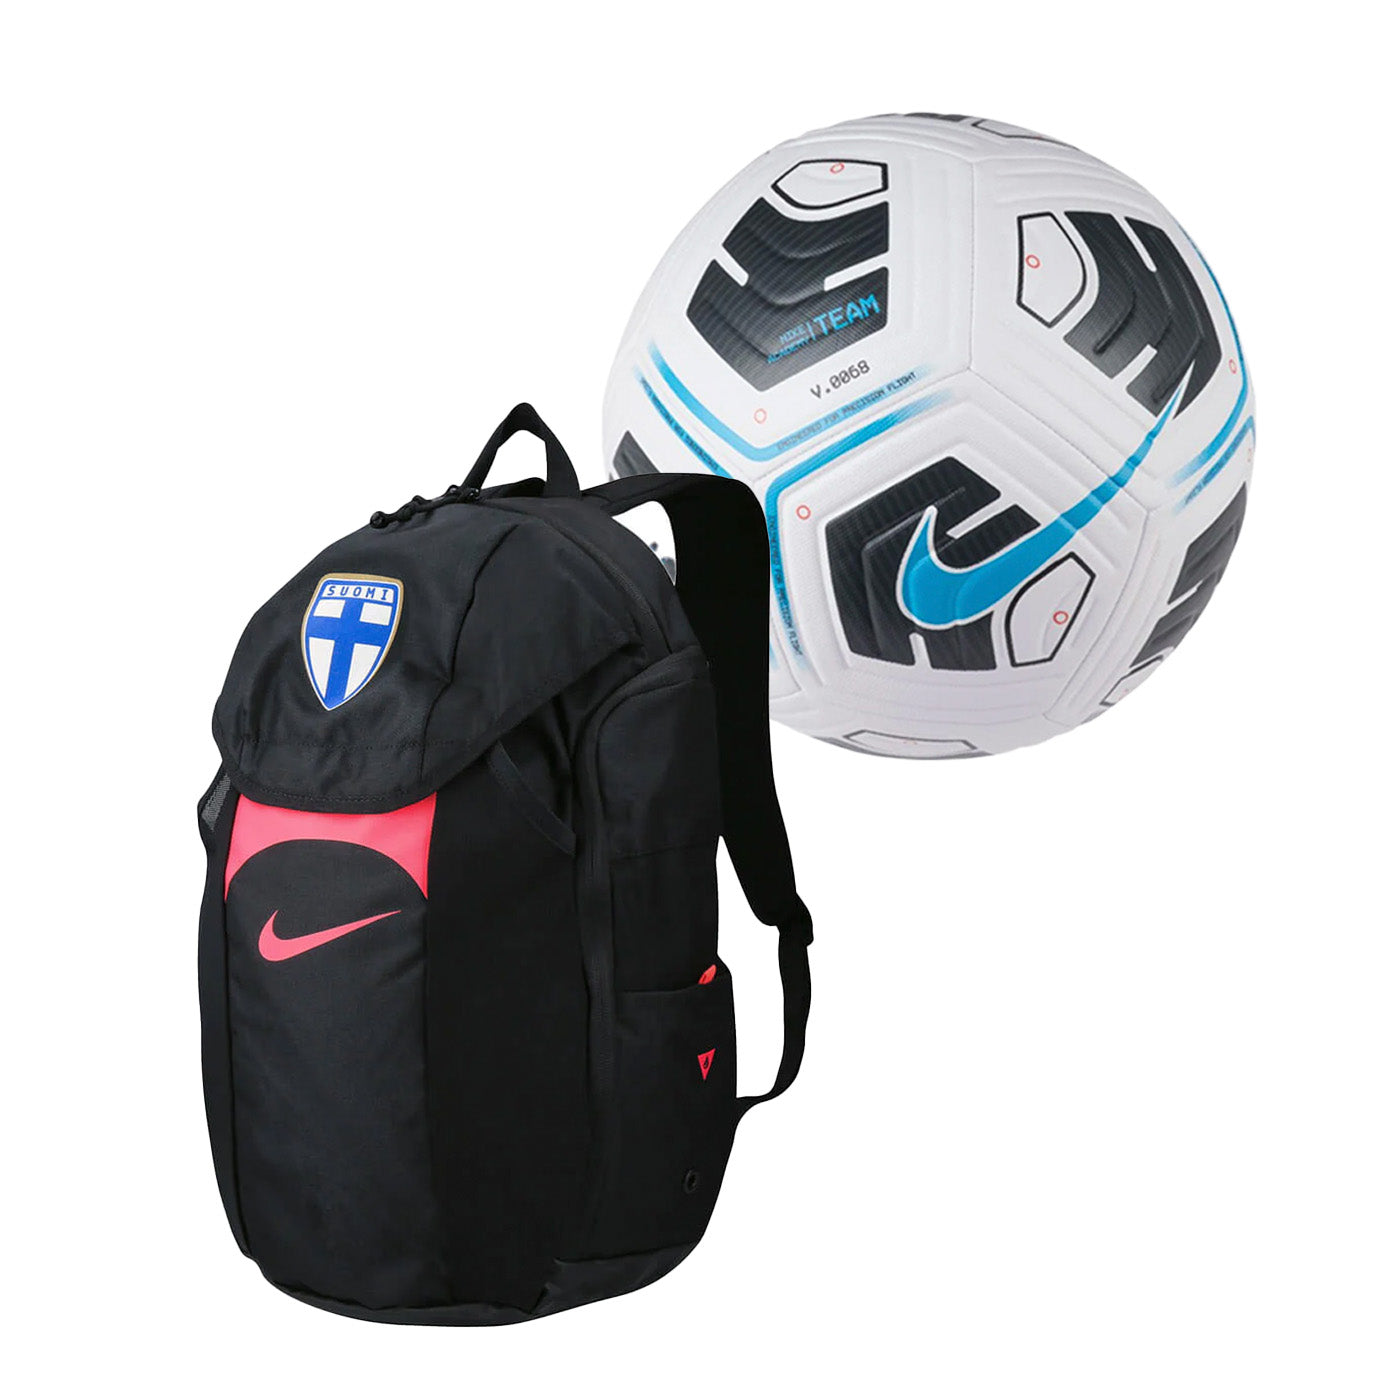 Academy Team Storm-FIT football backpack + Academy Team football